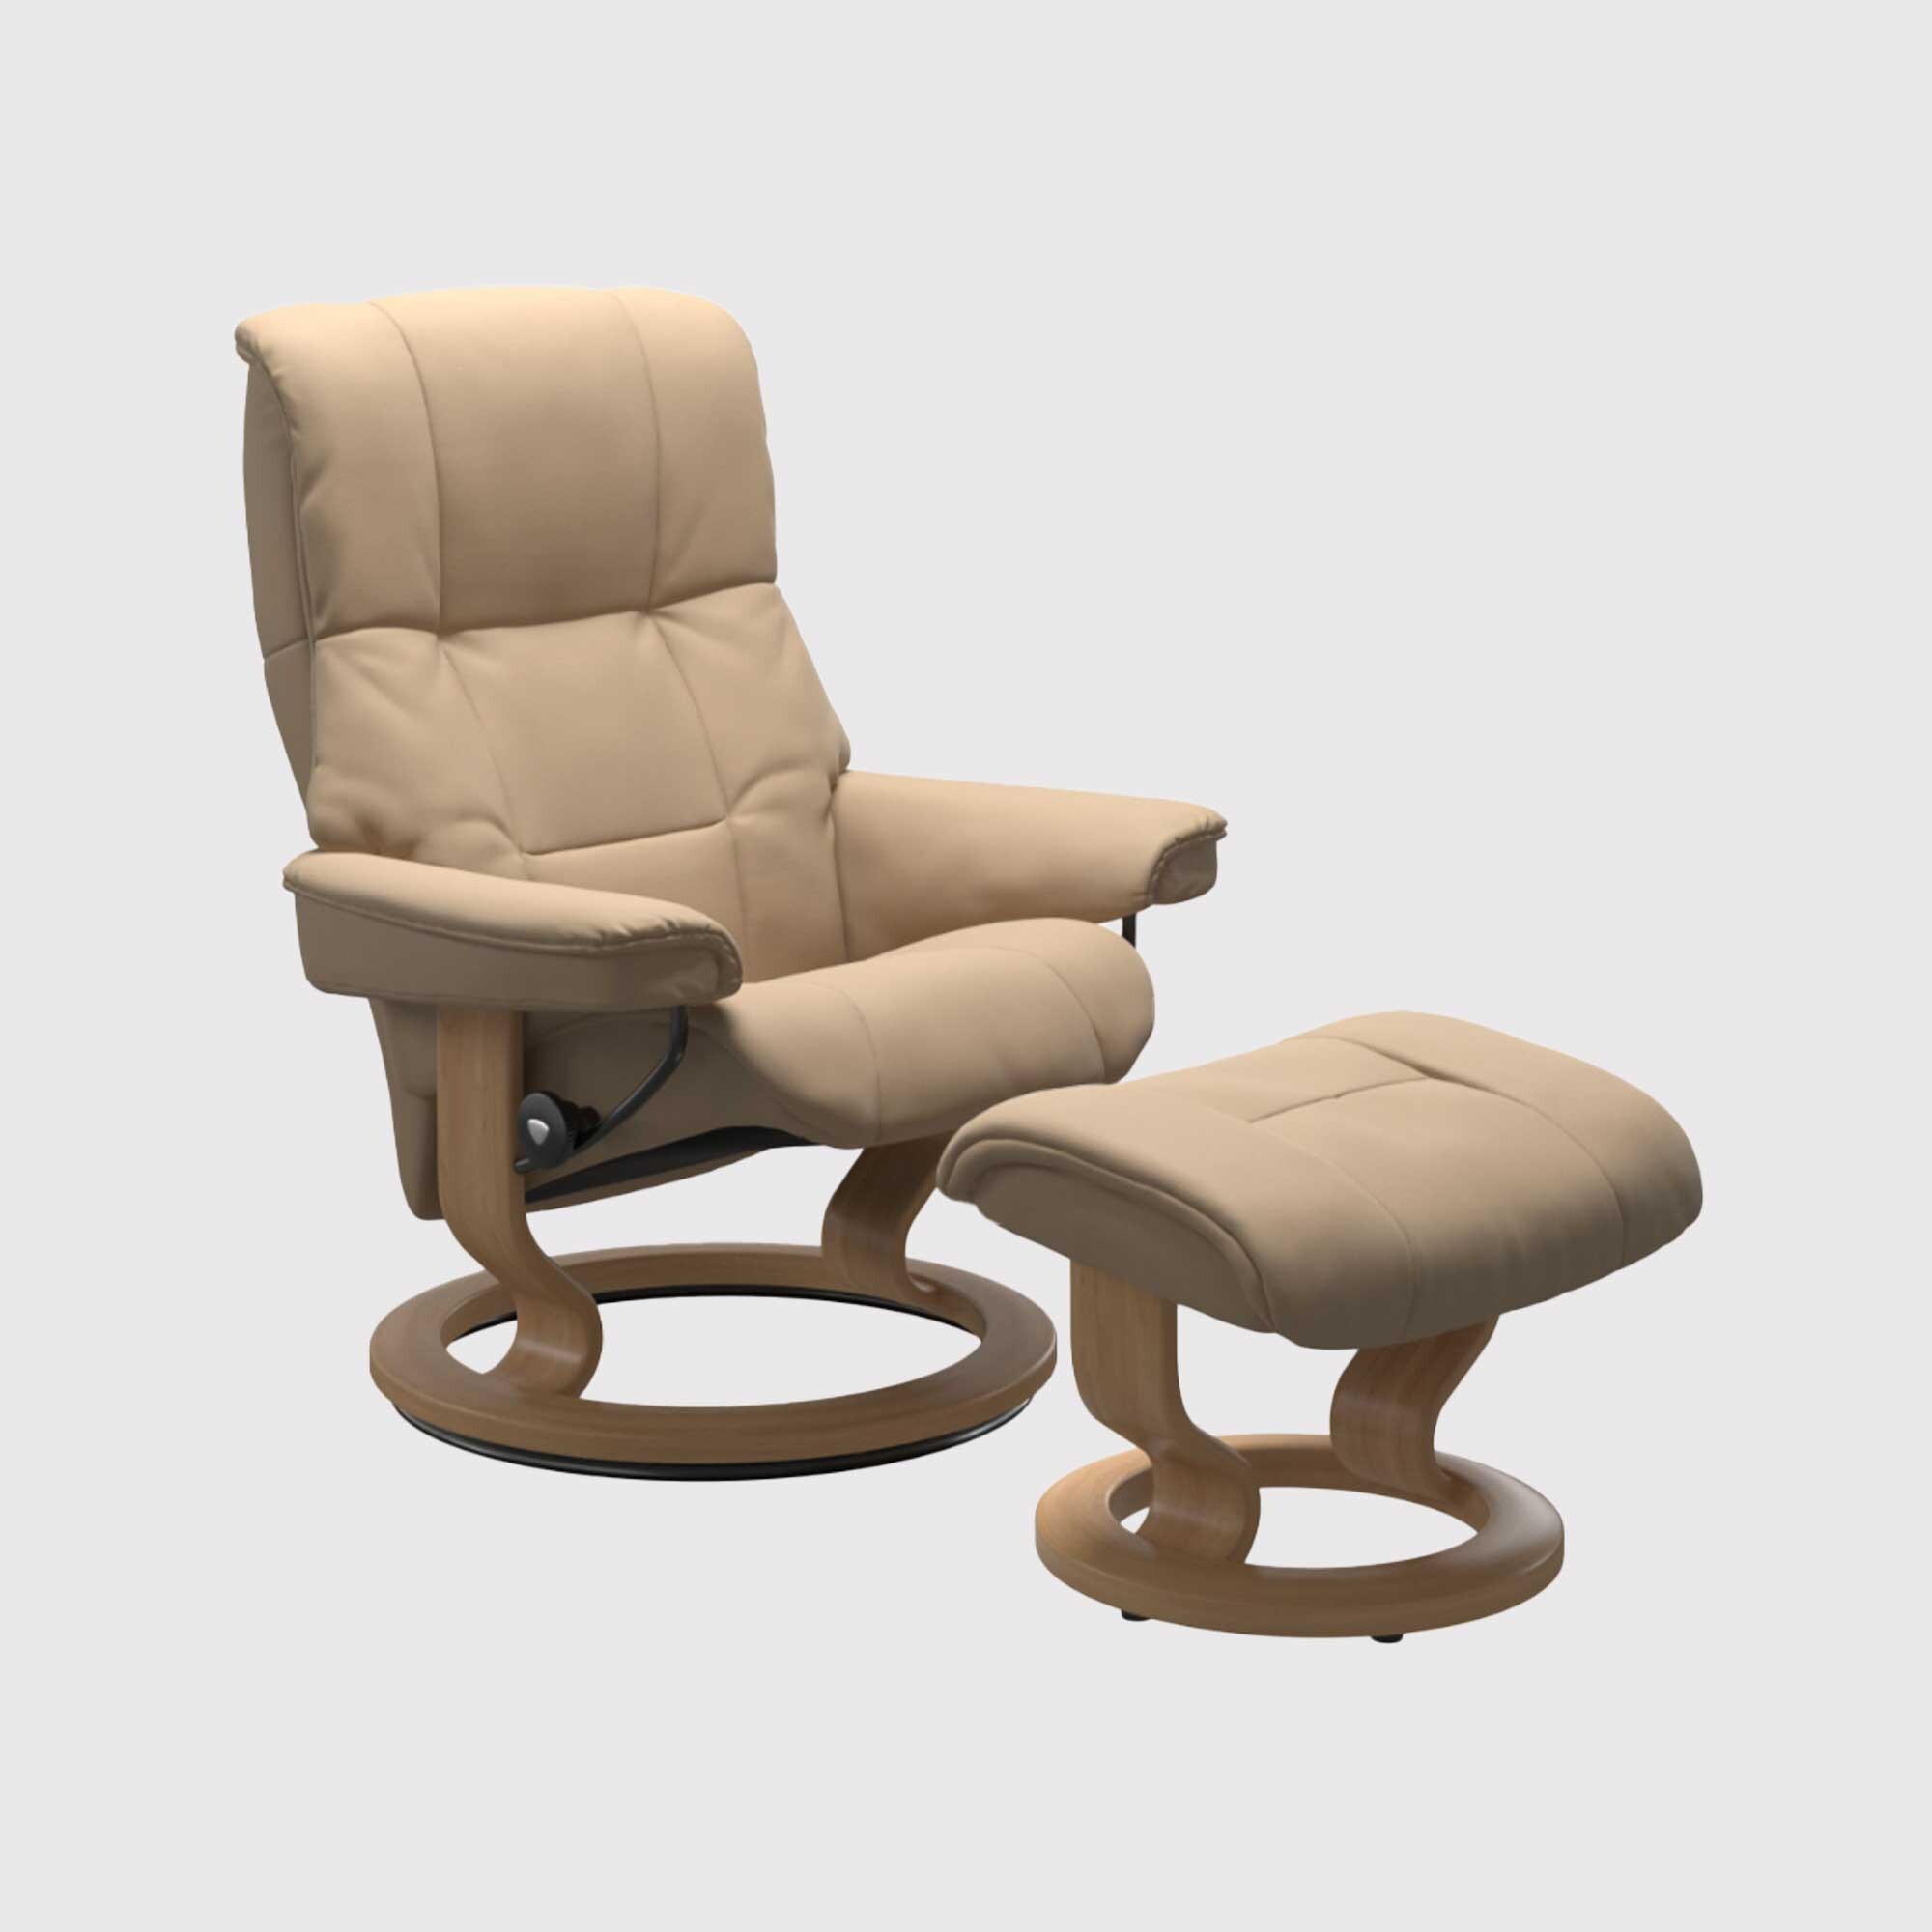 Stressless Mayfair Medium Classic Recliner Chair w/footstool, Neutral | Barker & Stonehouse